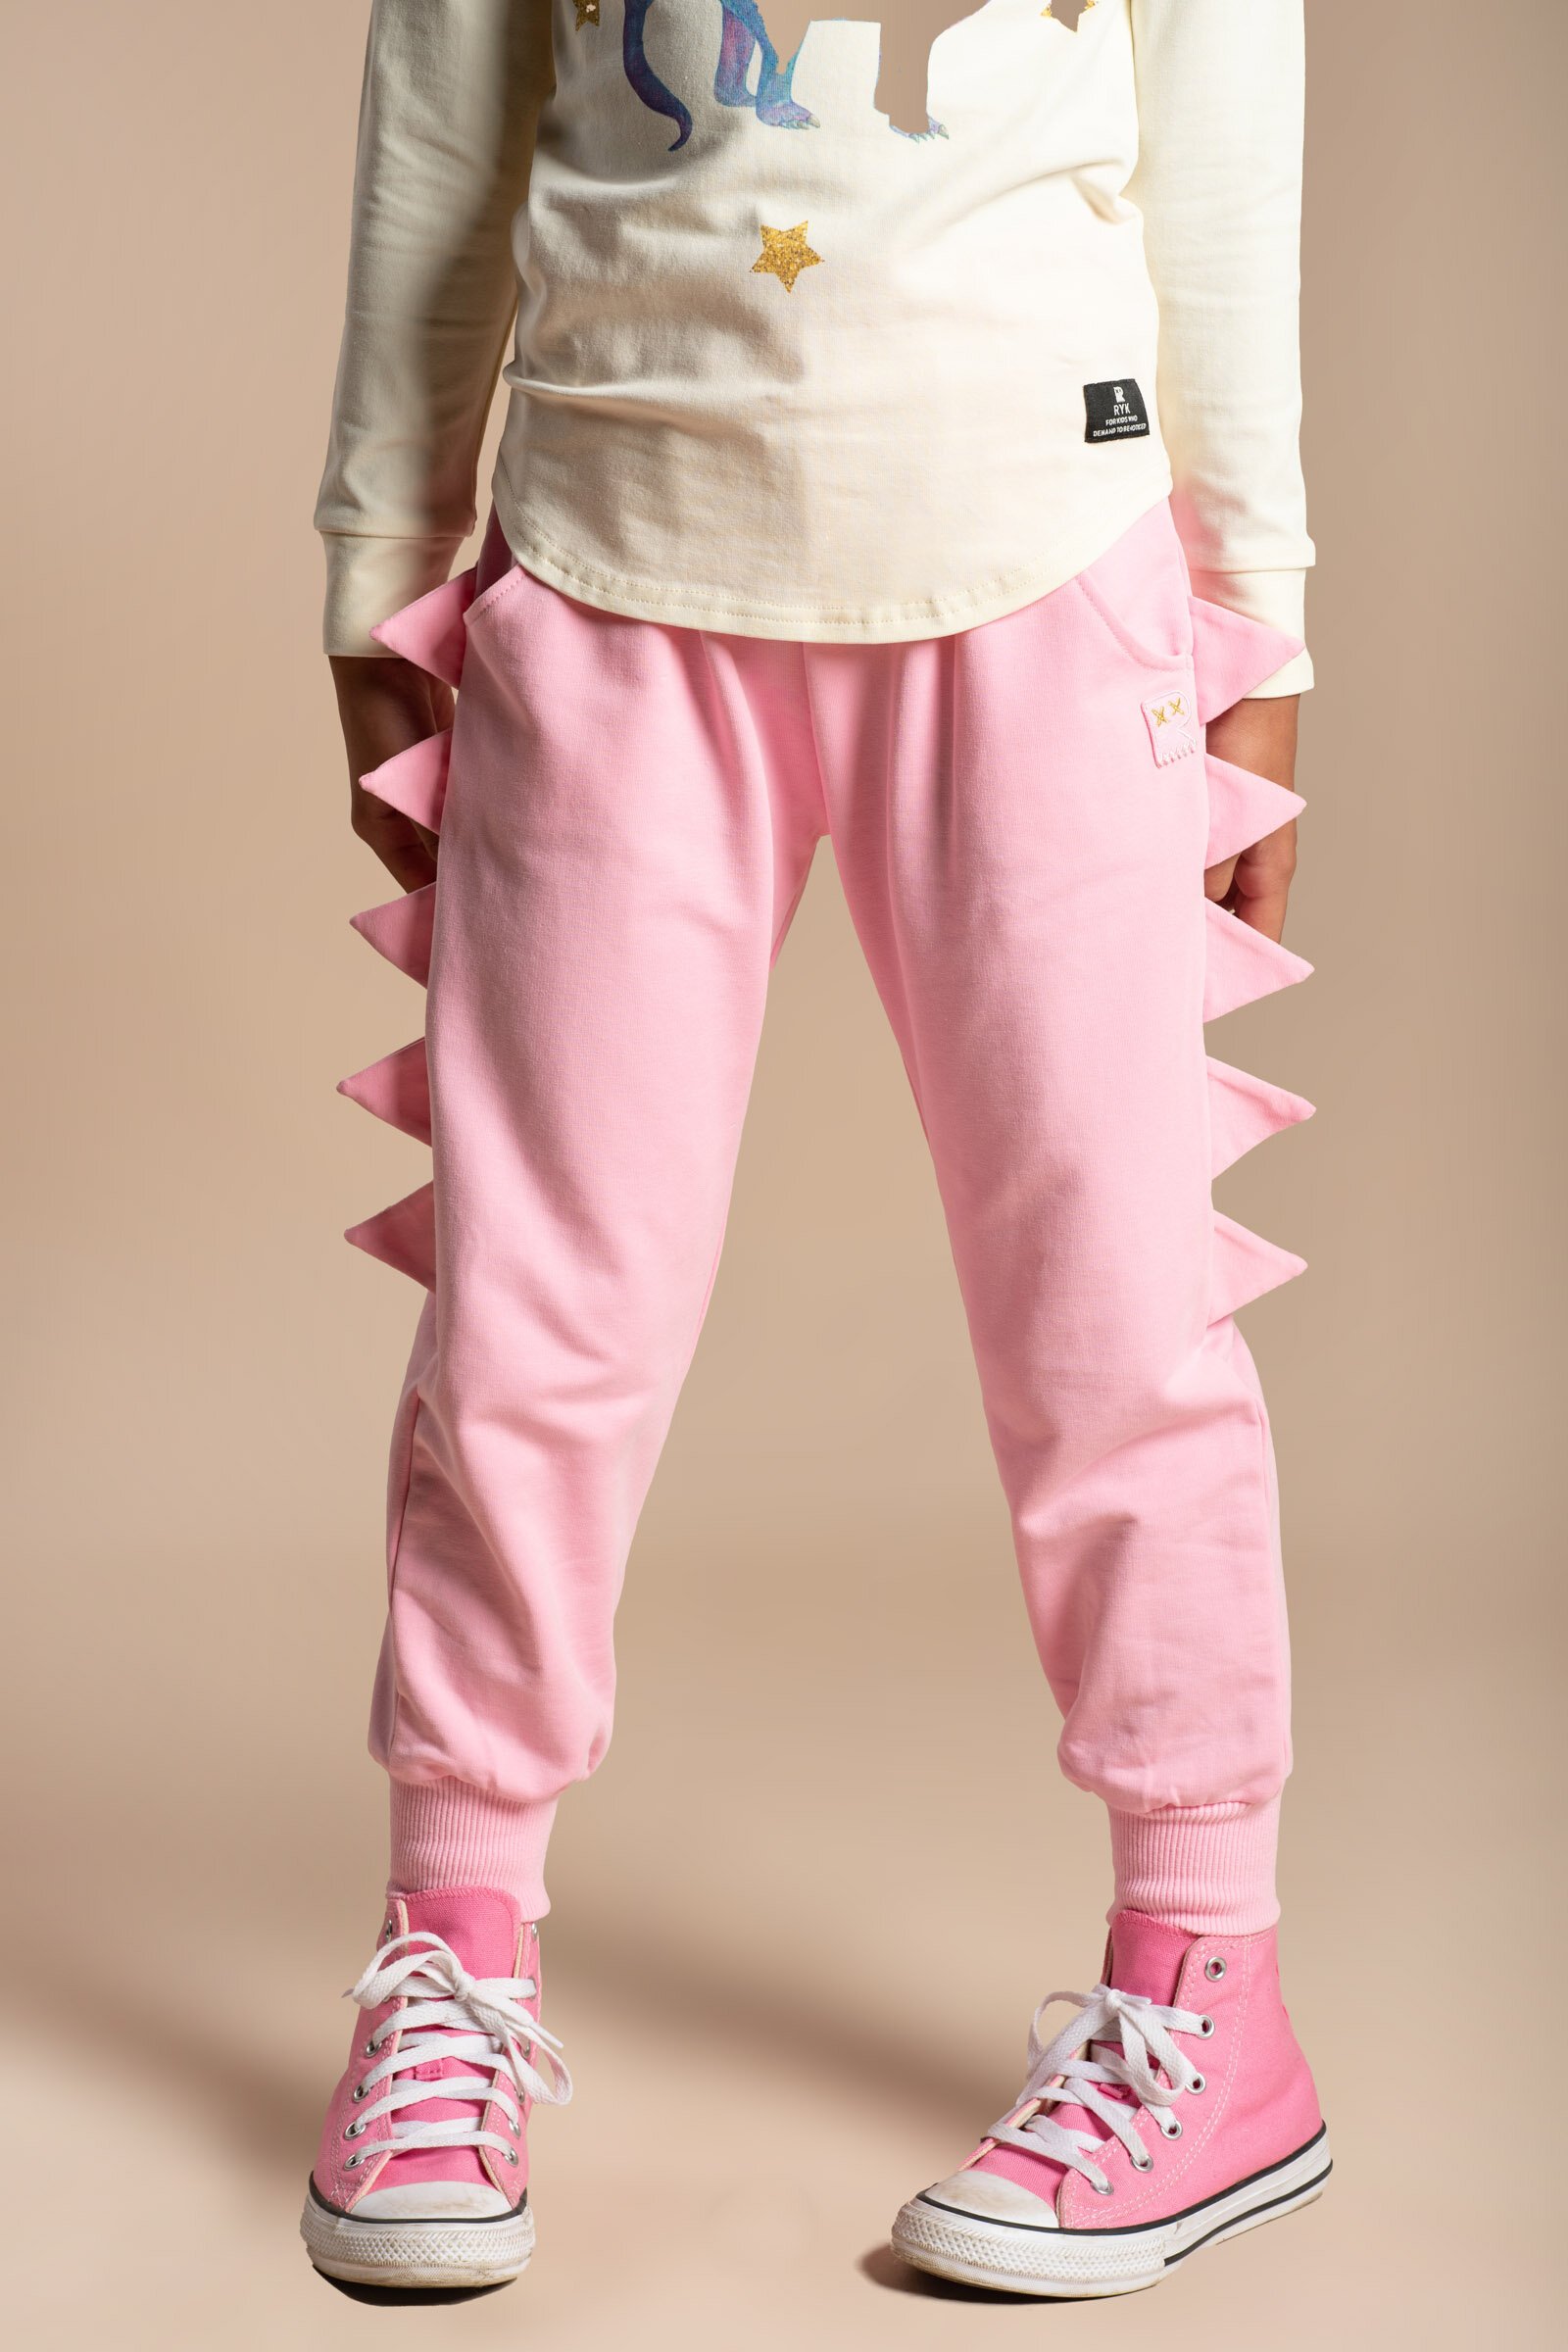 Bonds Kids Boys Girls Standard Trackie Track Pants size 4 Colour Apricot |  eBay